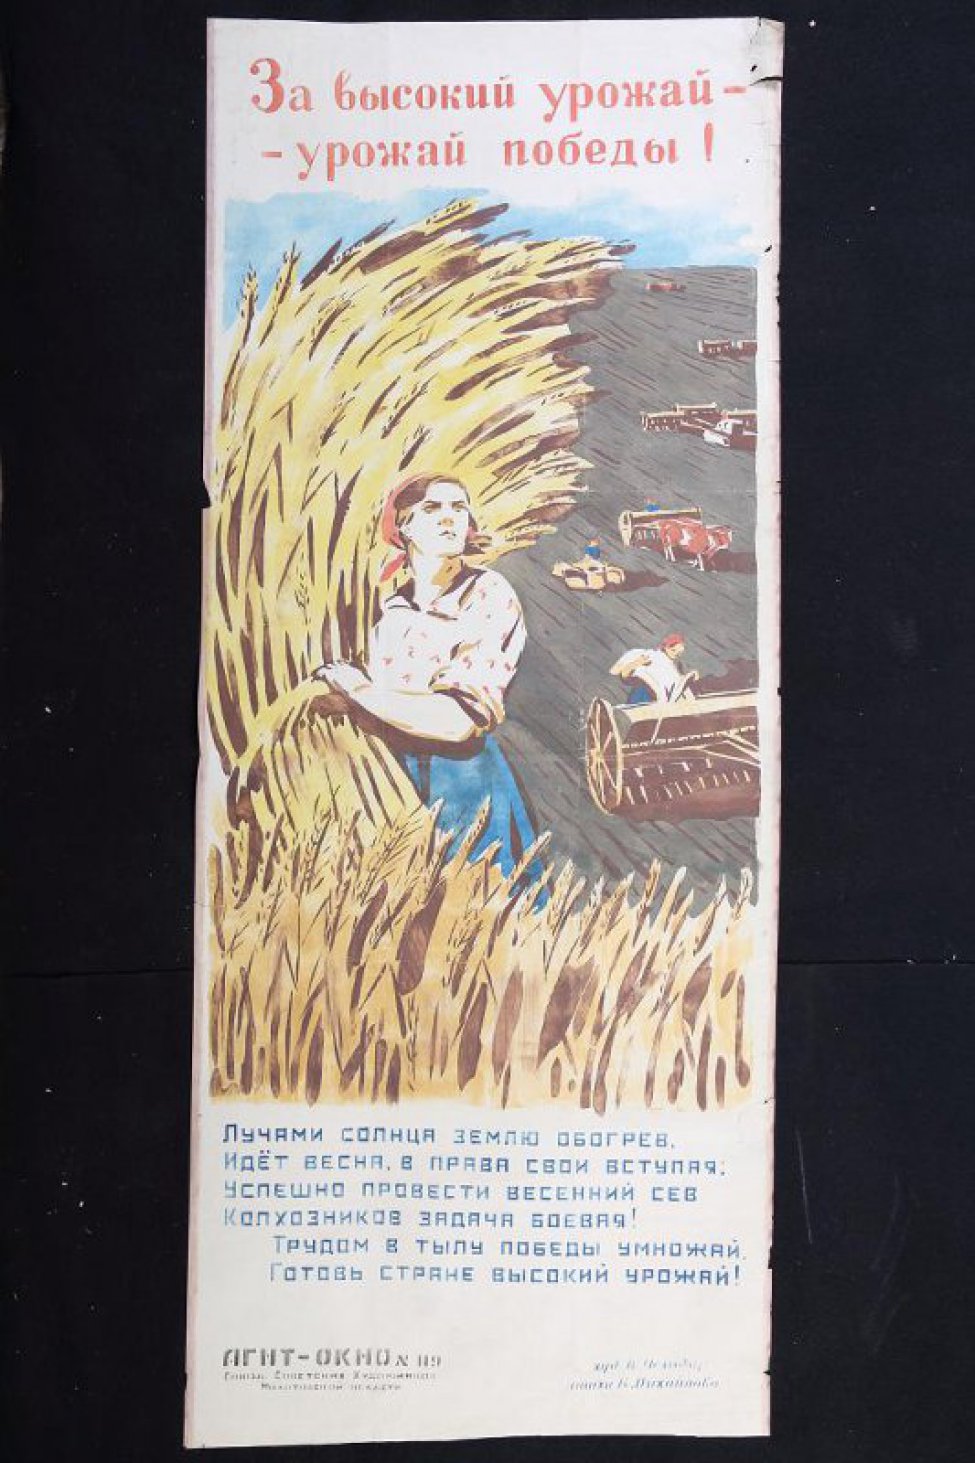 Изображено: женщина со снопом в руке, за ней на поле работают сельскохозяйственные машины.